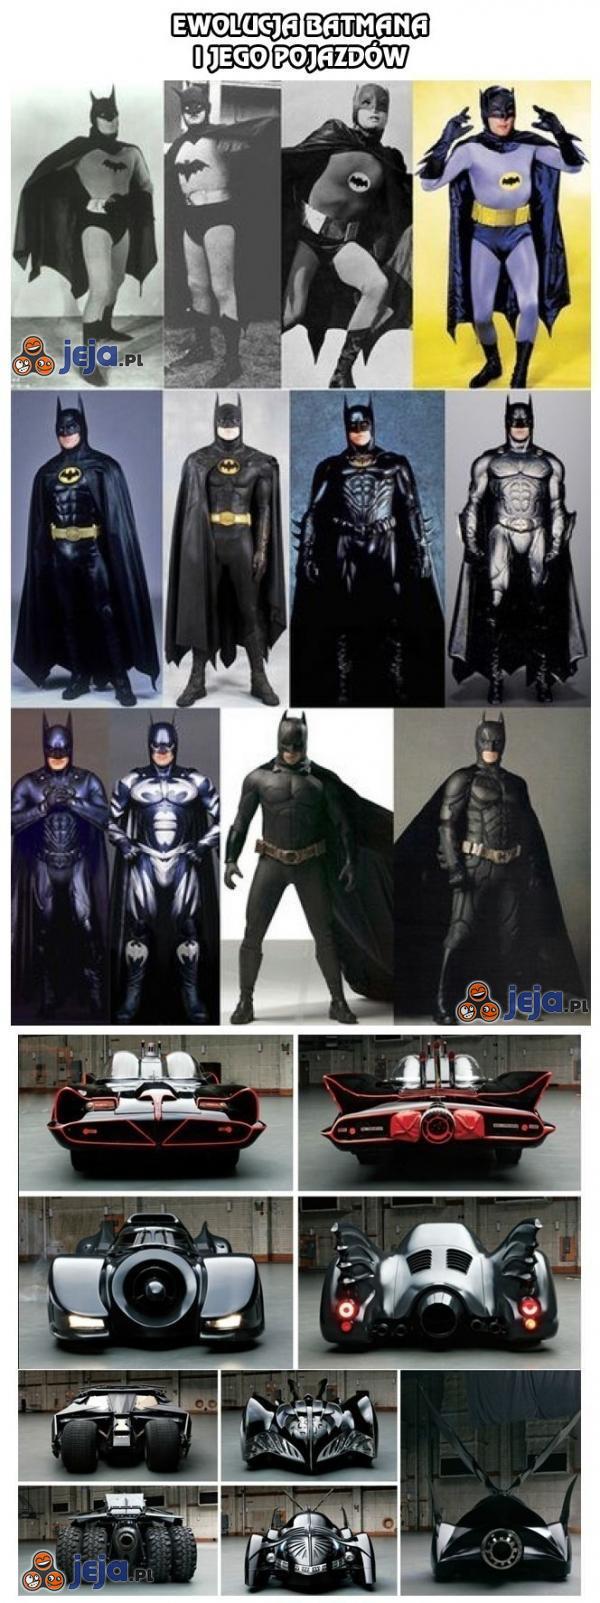 Ewolucja Batmana i jego pojazdów